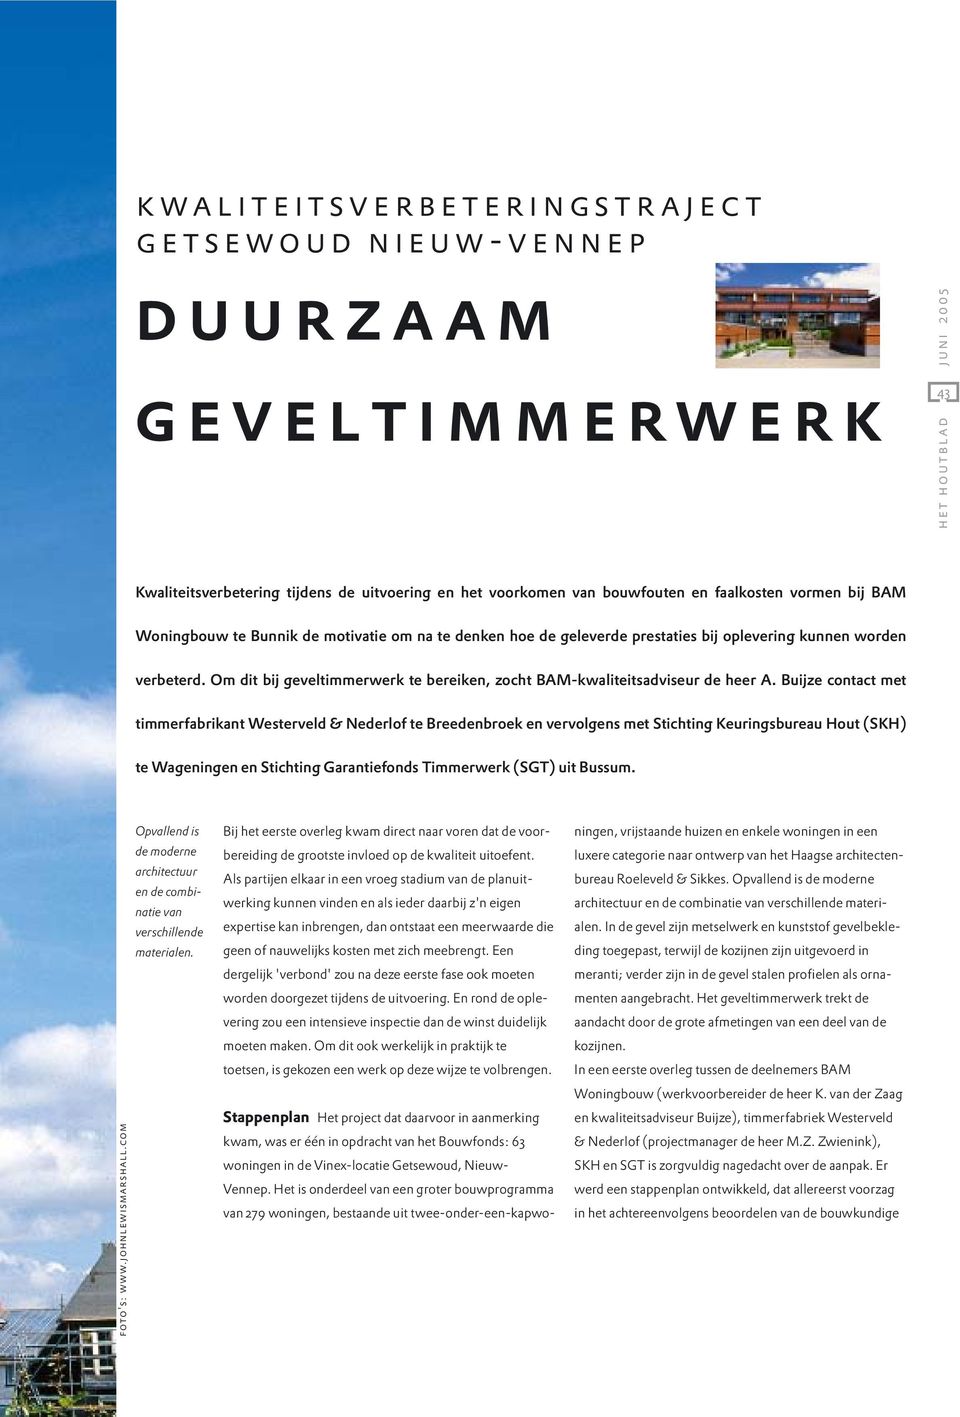 Buijze contact met timmerfabrikant Westerveld & Nederlof te Breedenbroek en vervolgens met Stichting Keuringsbureau Hout (SKH) te Wageningen en Stichting Garantiefonds Timmerwerk (SGT) uit Bussum.